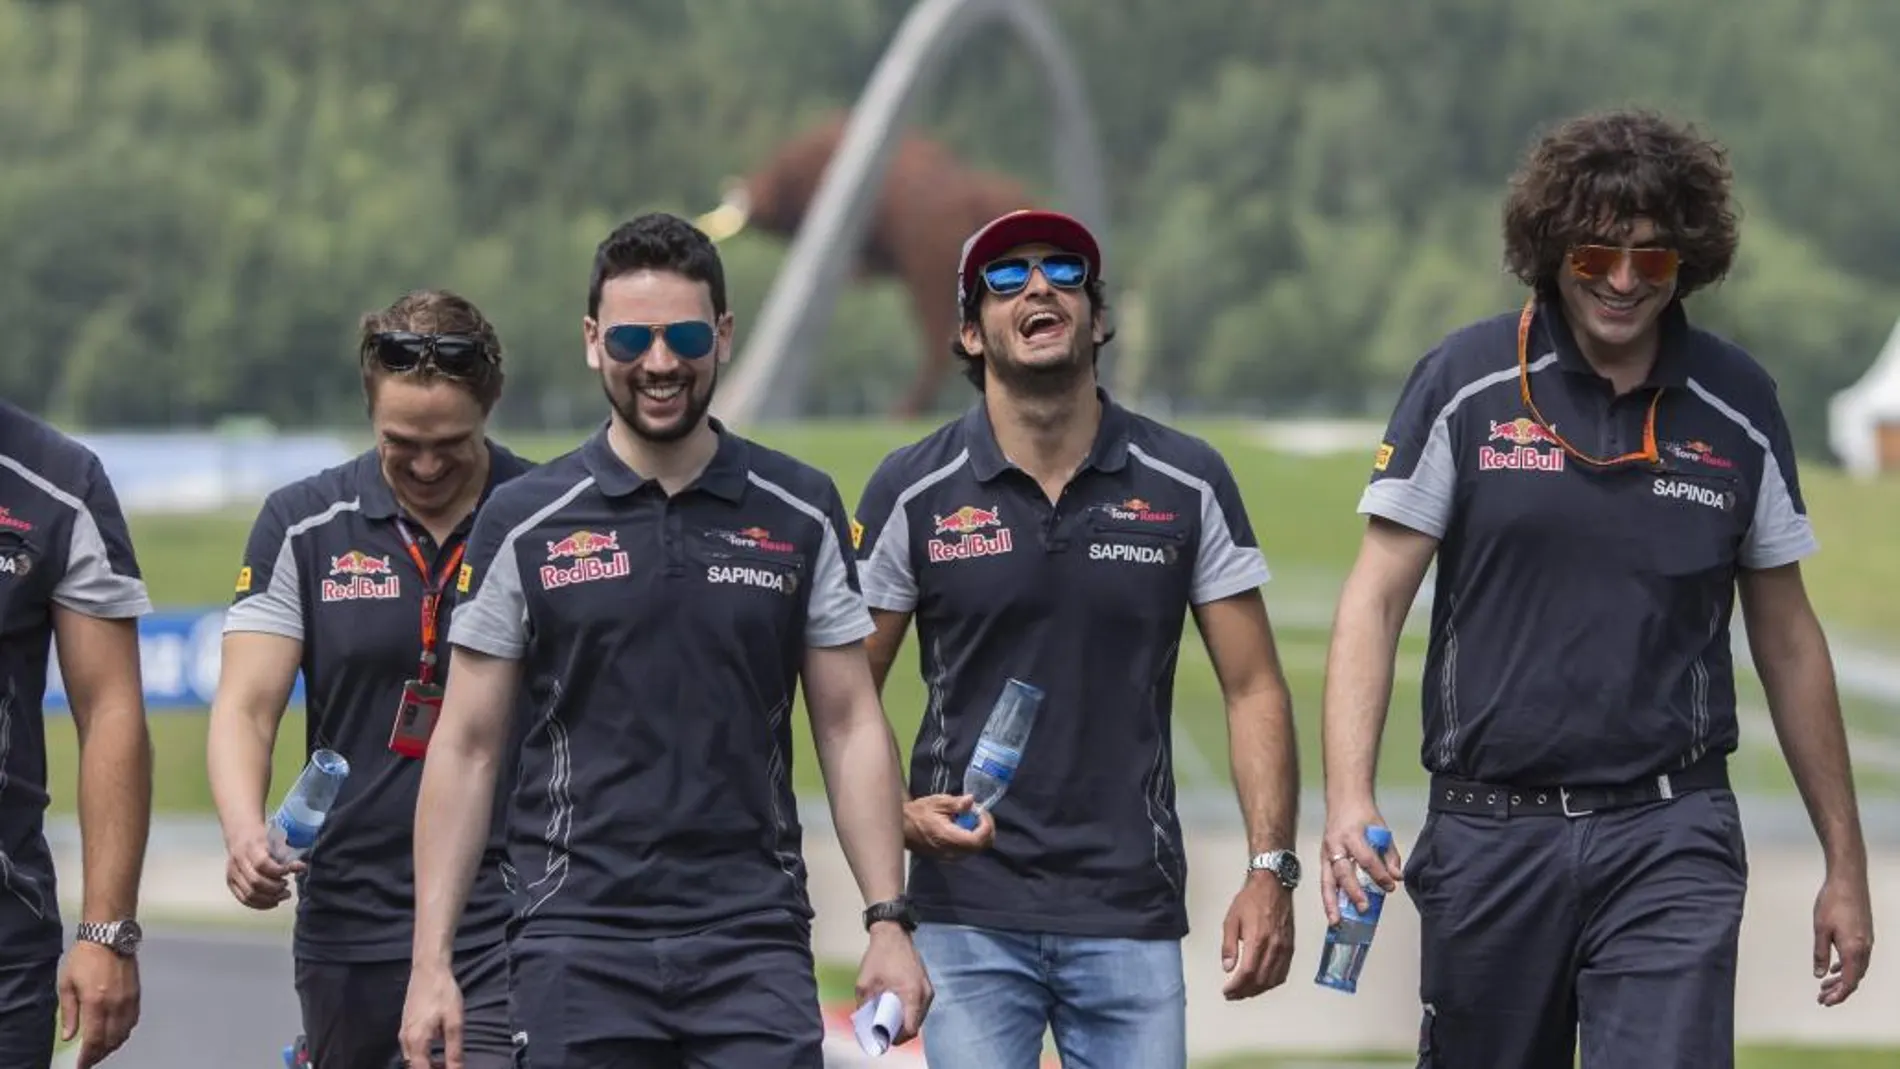 El piloto español de Fórmula Uno Carlos Sainz (2º dcha), de Toro Rosso, inspecciona la pista mientras prepara su participación en el Gran Premio de Austria de Fórmula Uno en Spielberg (Austria)